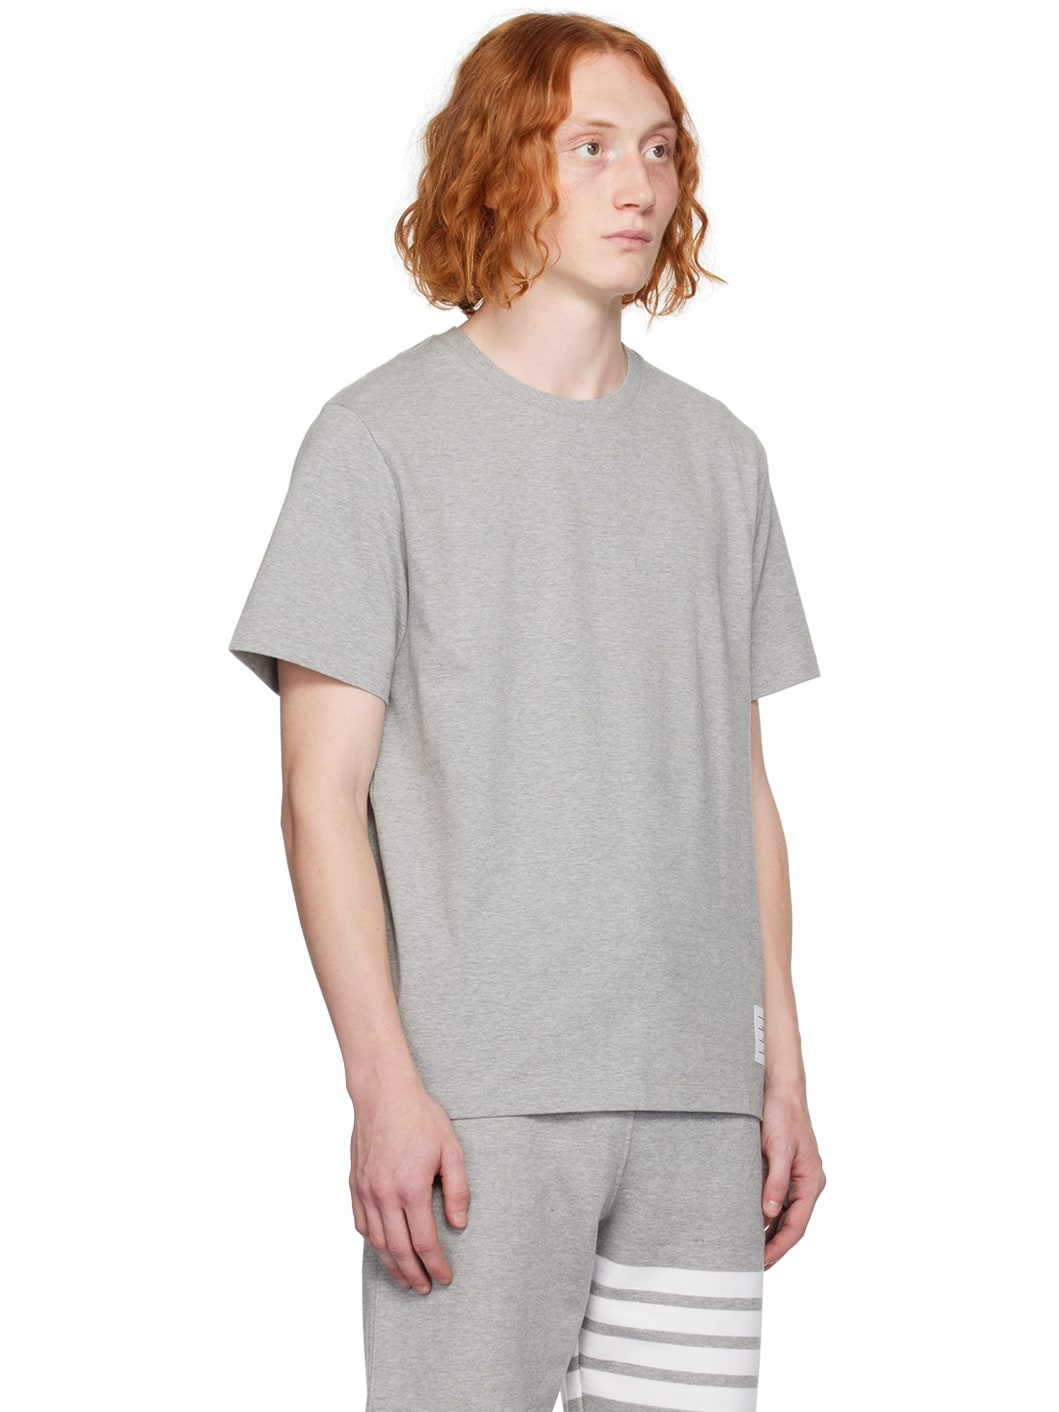 Gray Tennis-Tail T-Shirt - 2